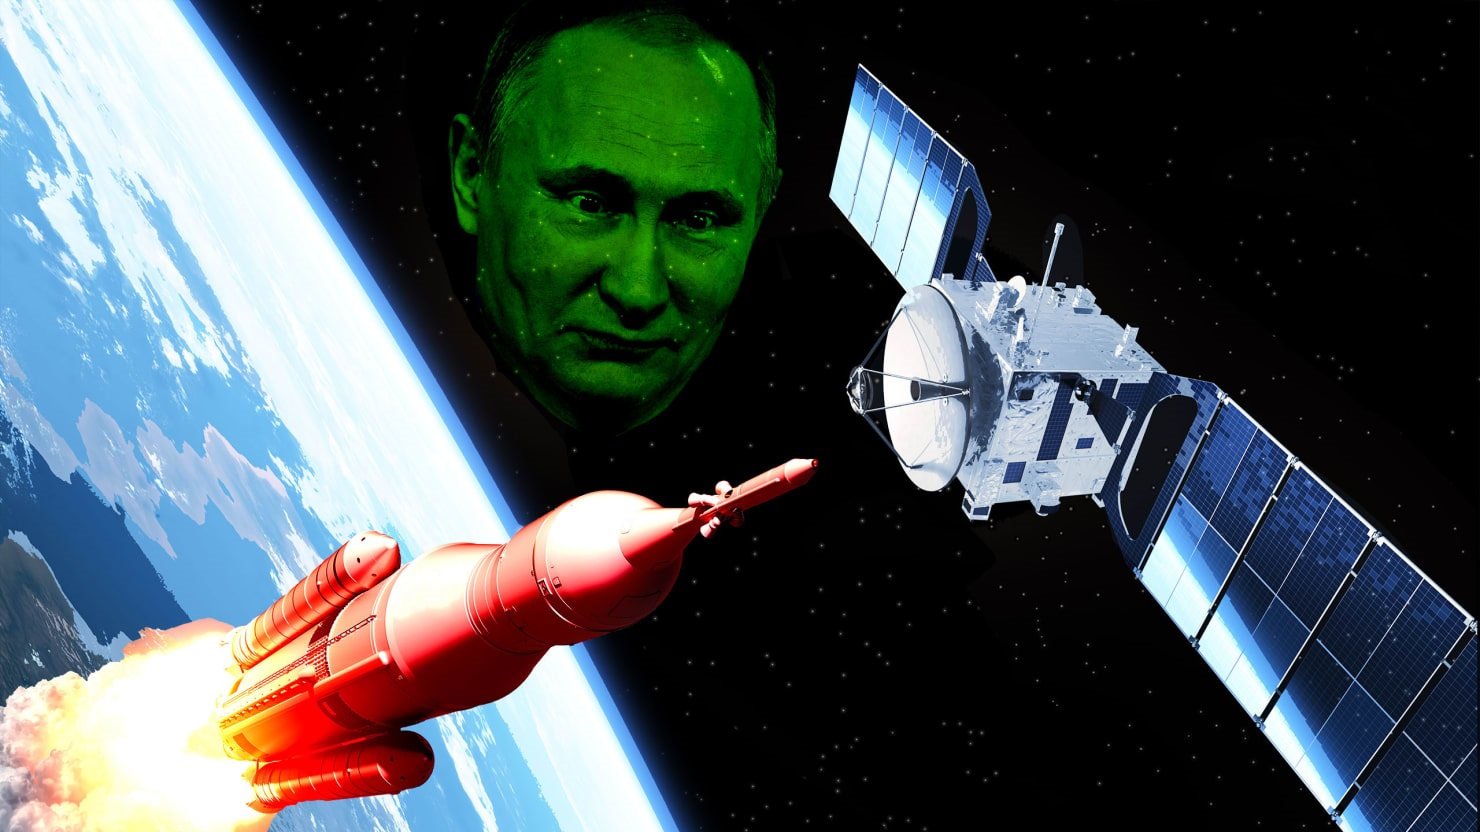 Arma espacial russa 